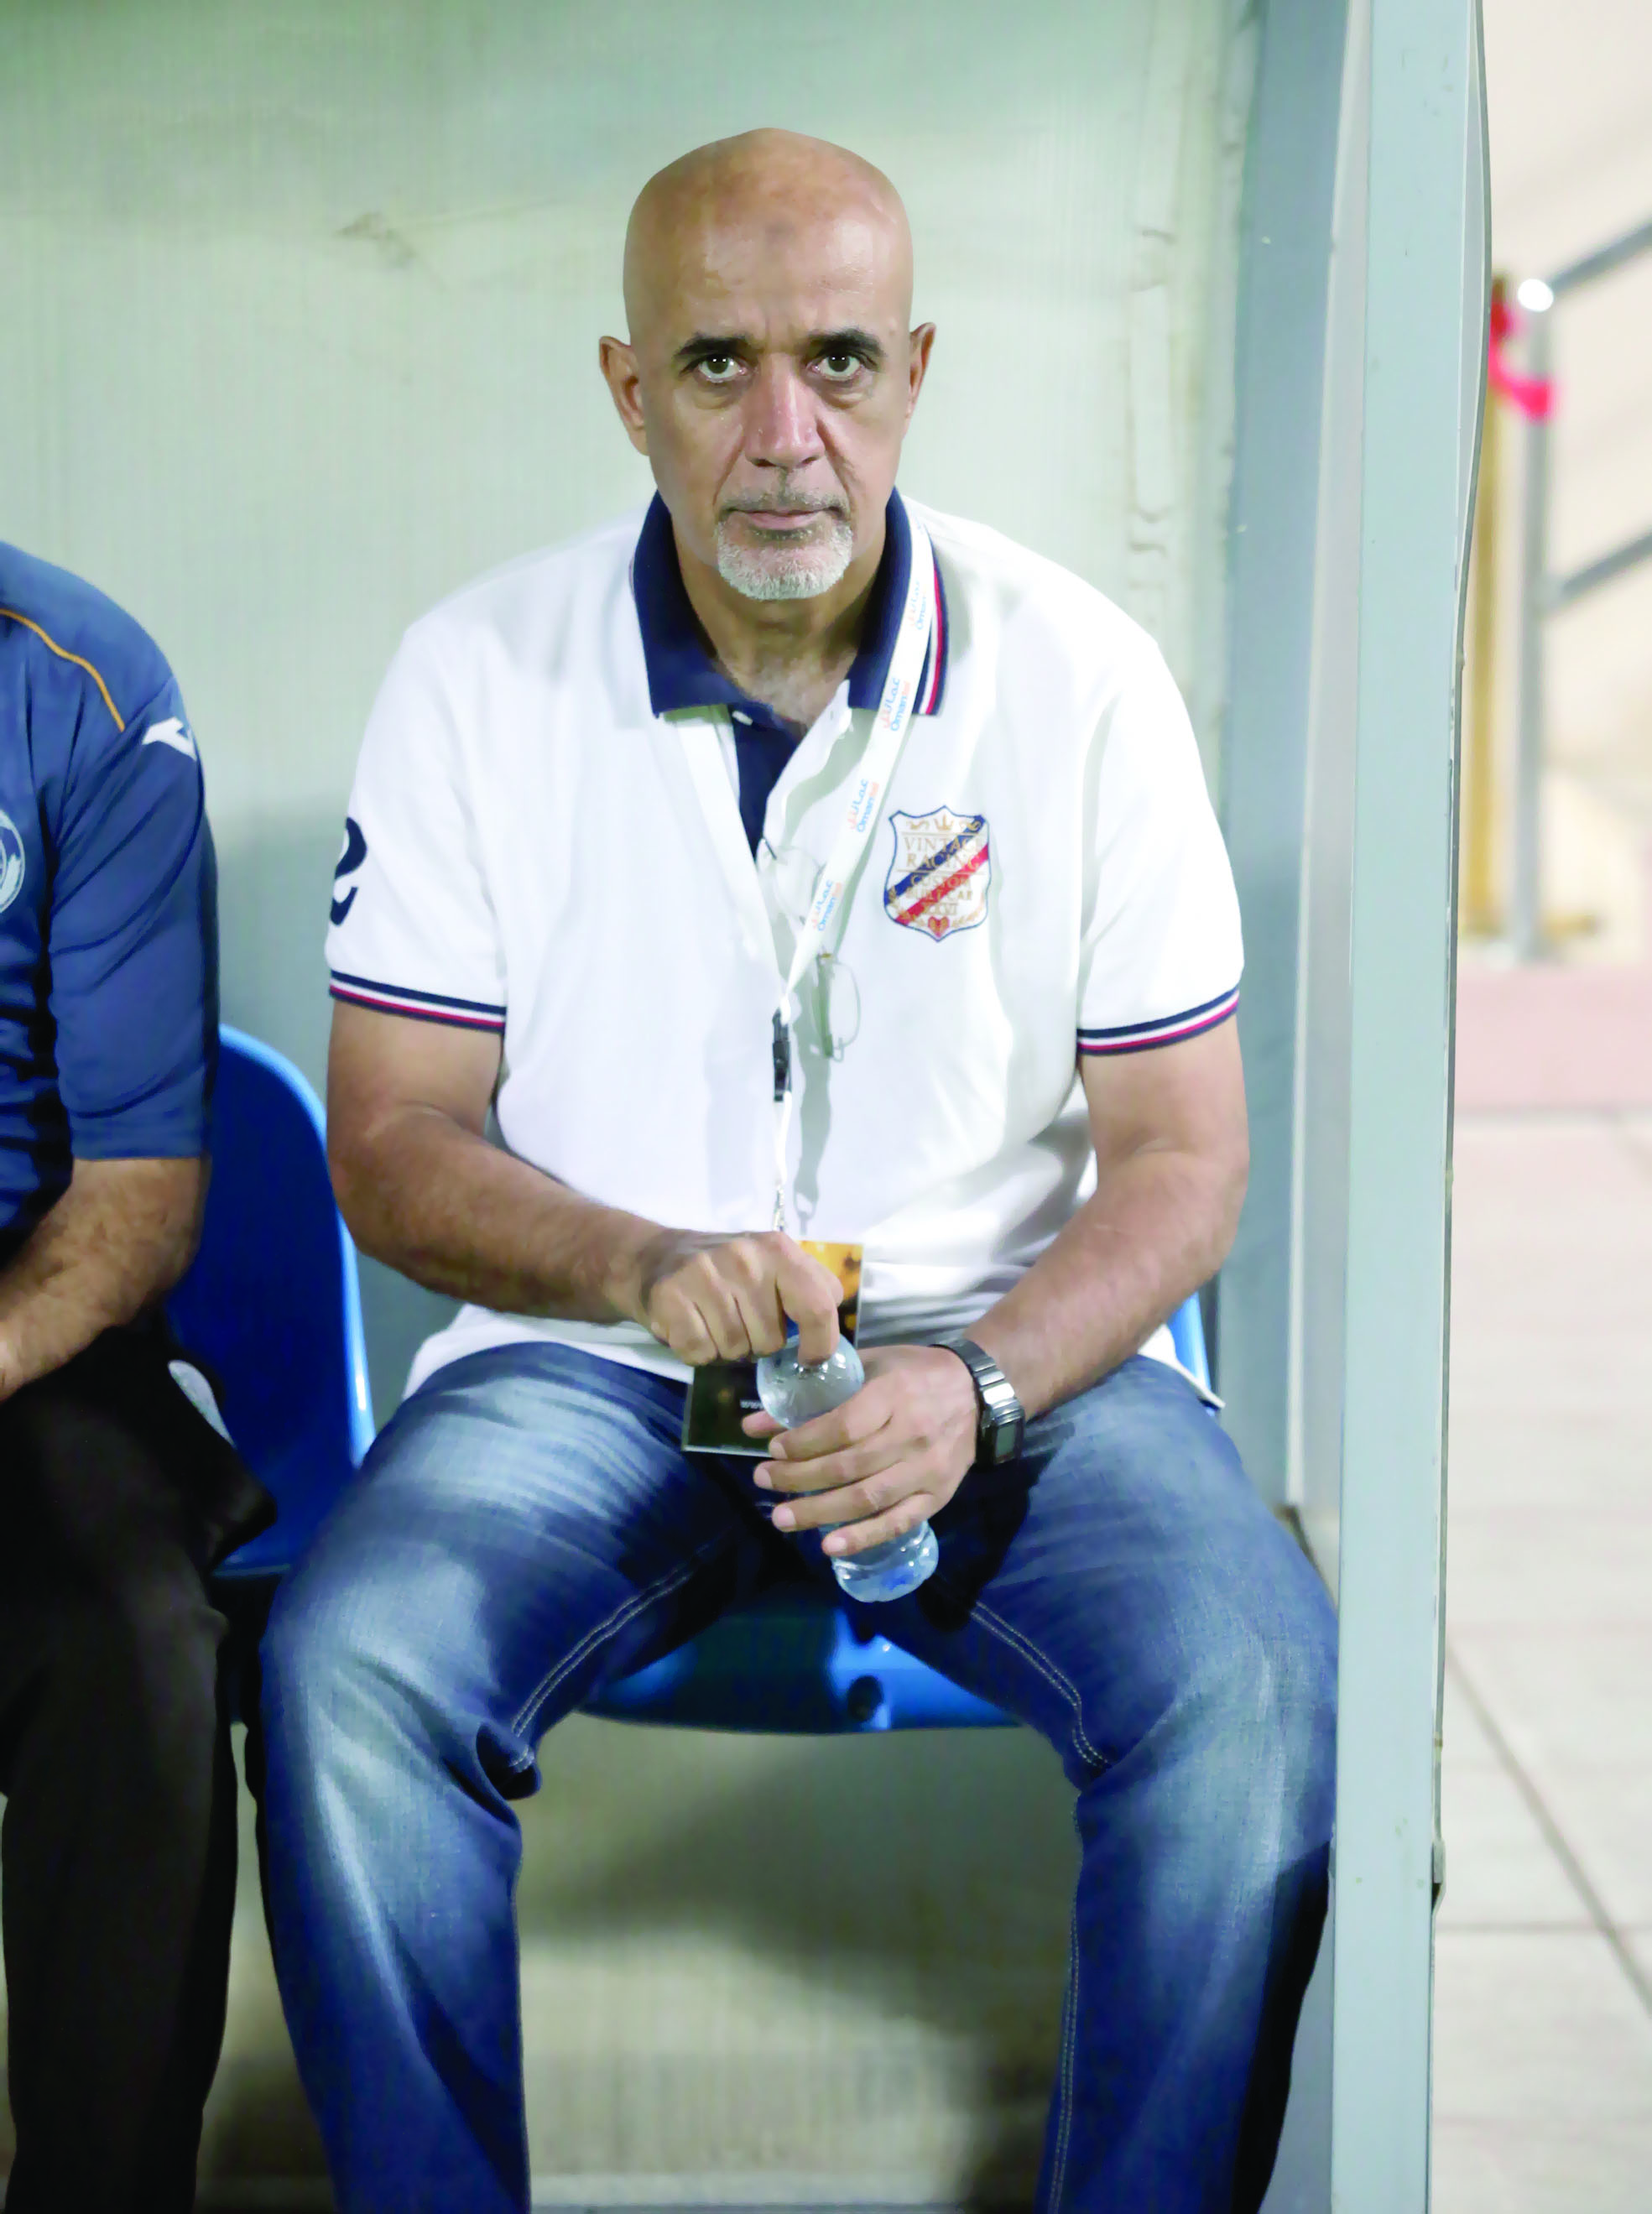 مدرب نادي النصر عبدالناصر المكيس:
المدربون شماعة أخطاء إدارات الأندية